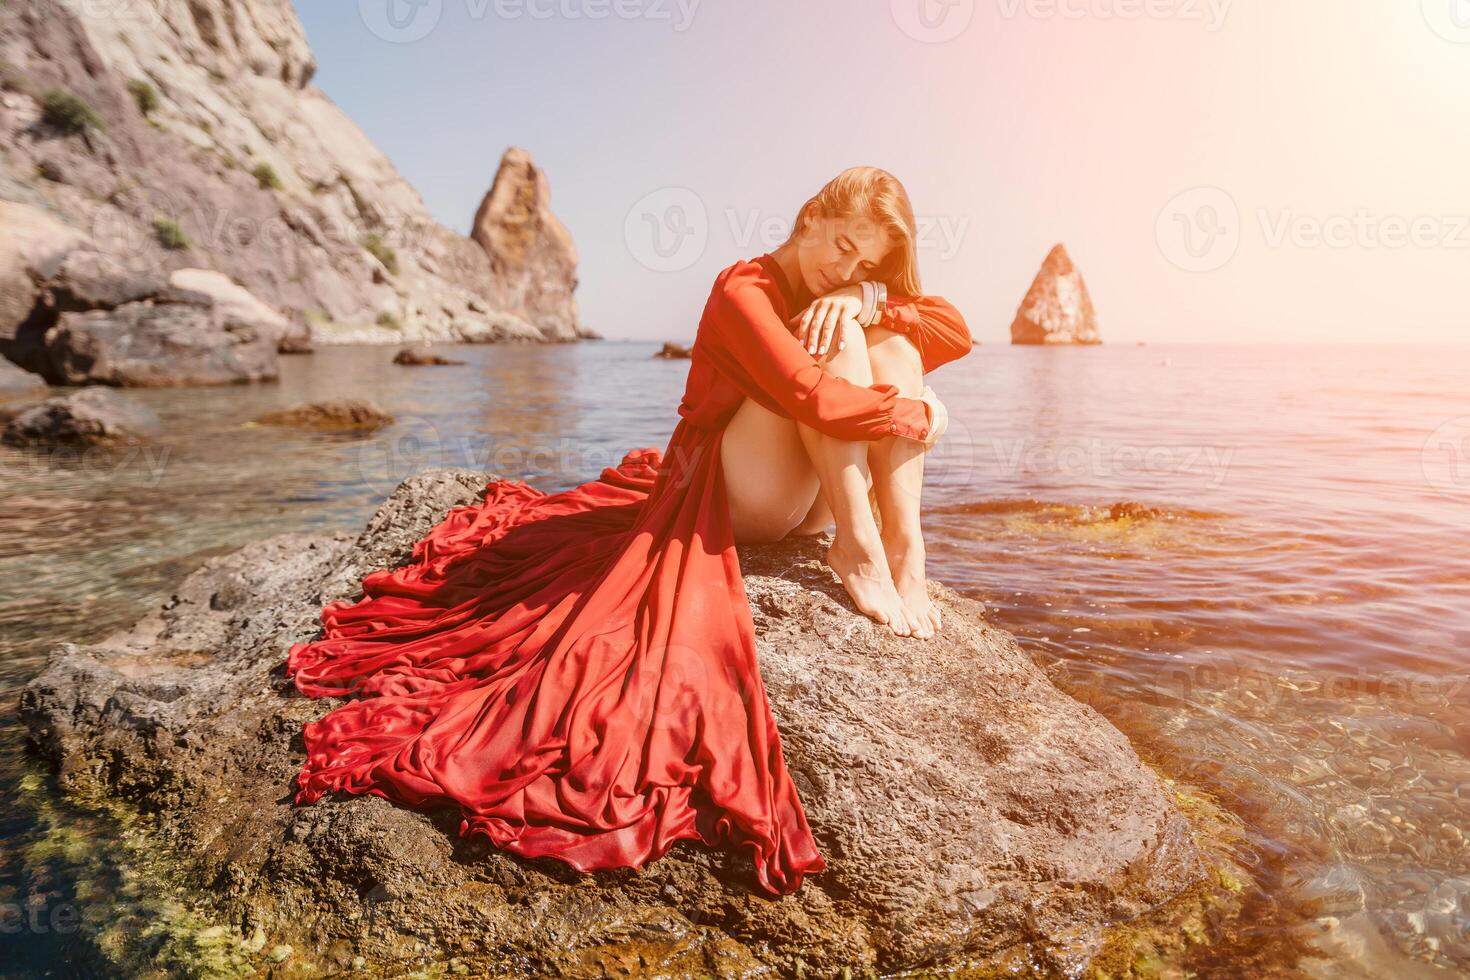 vrouw reizen zee. gelukkig toerist in rood jurk genieten nemen afbeelding buitenshuis voor herinneringen. vrouw reiziger poseren Aan de rots Bij zee baai omringd door vulkanisch bergen, sharing reizen avontuur reis foto